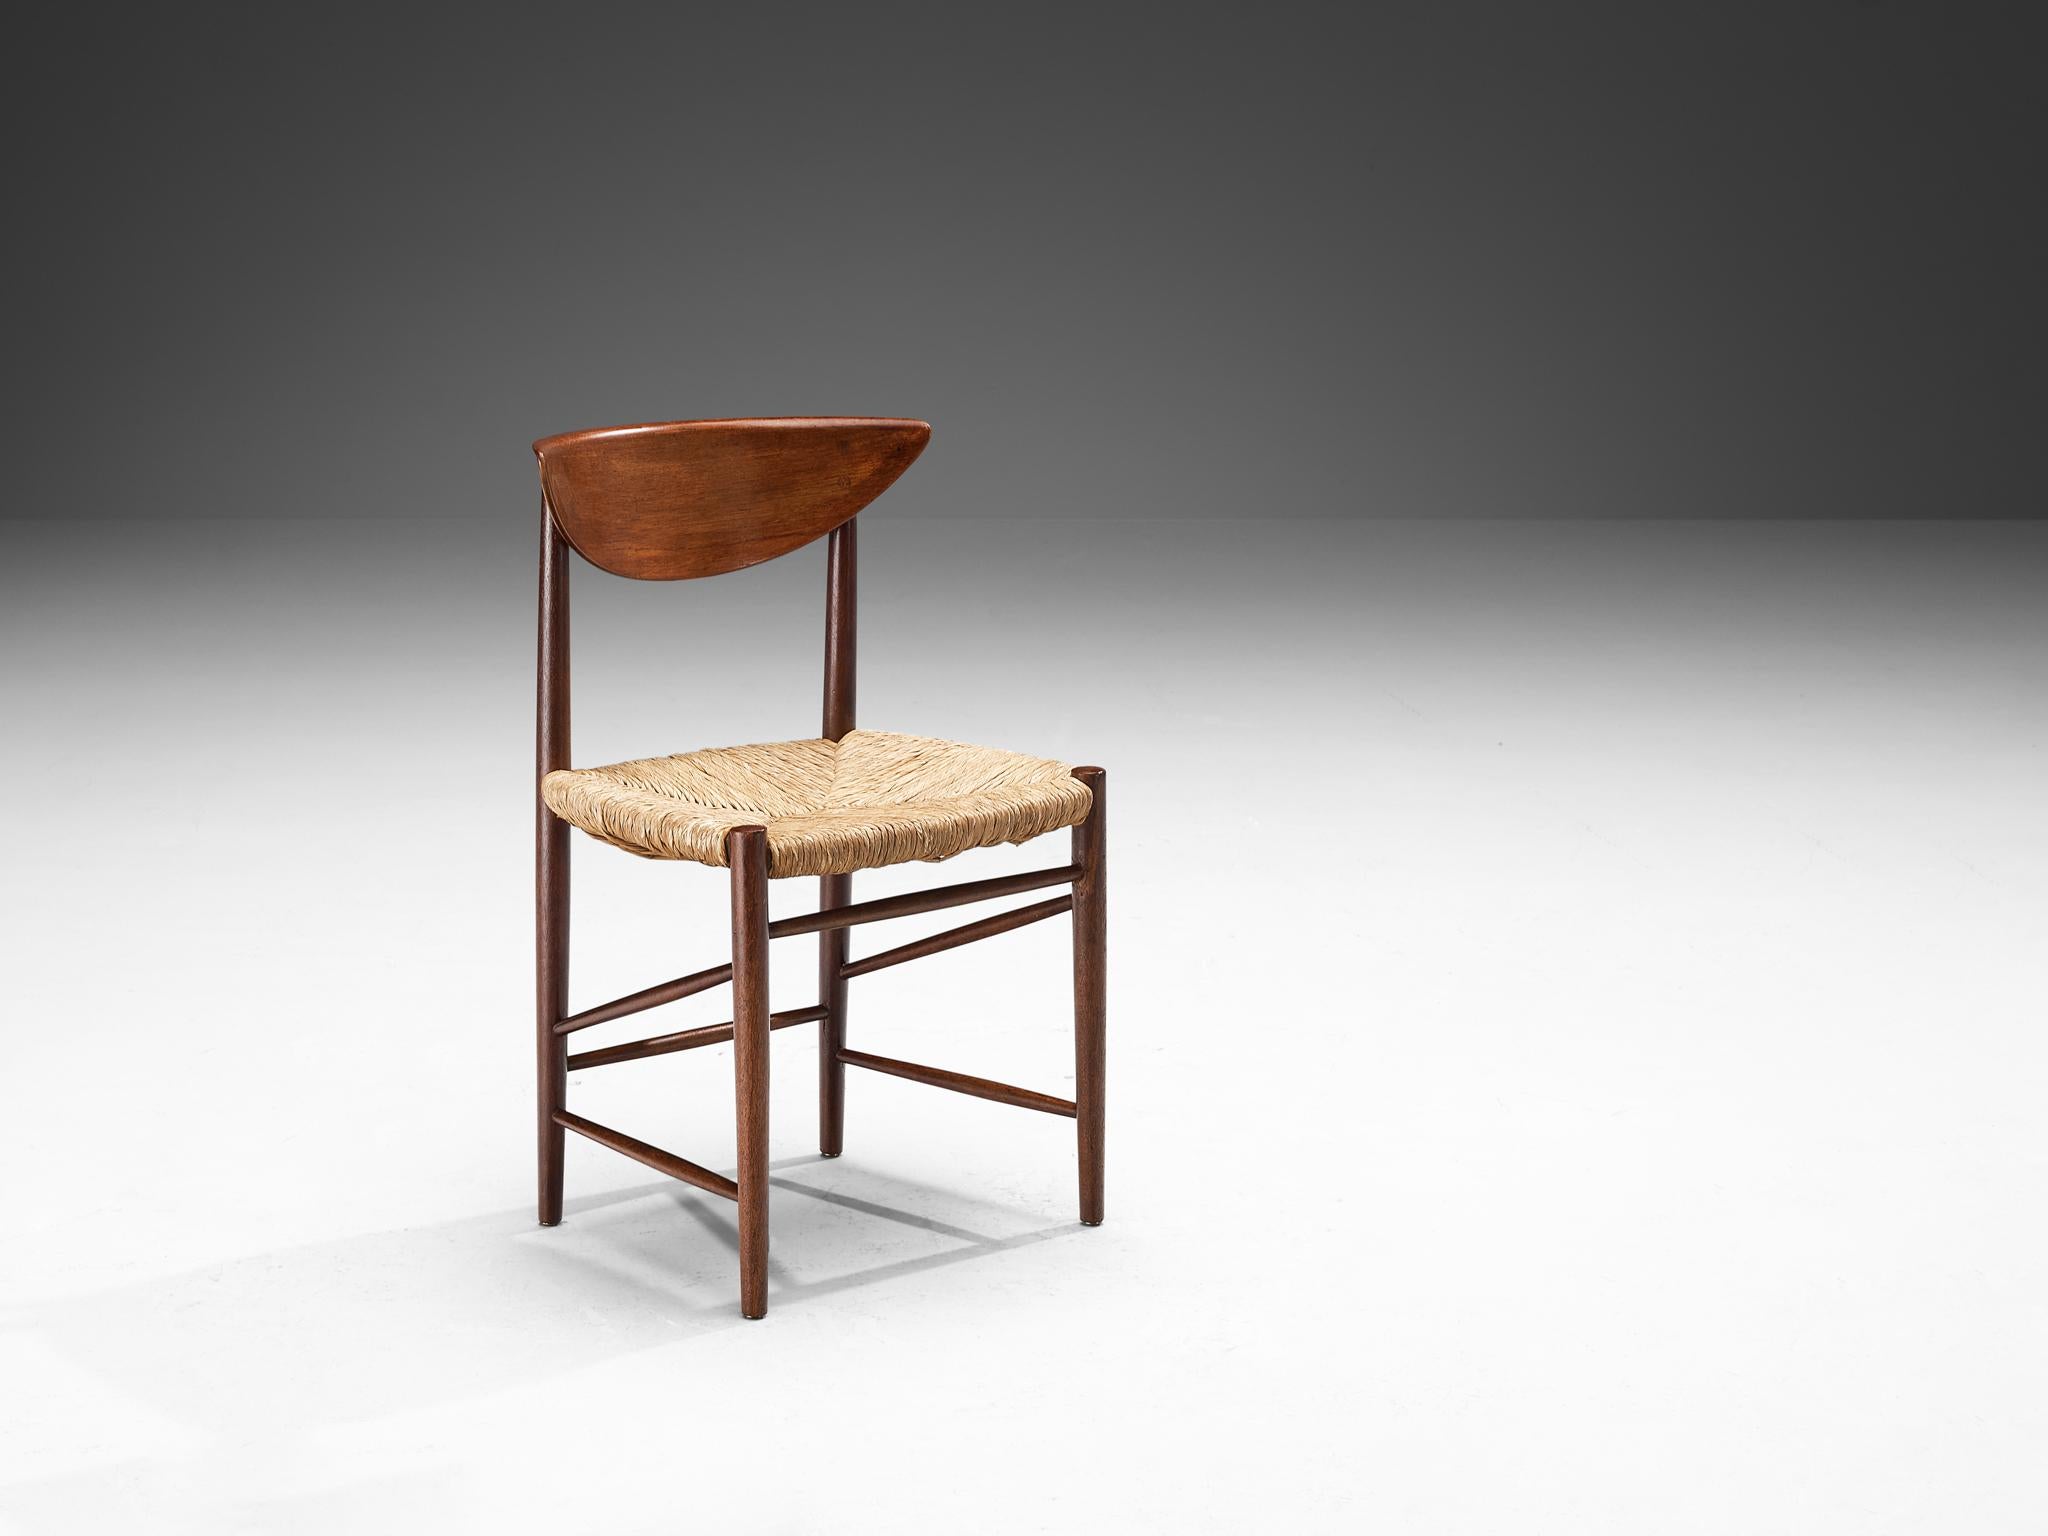 Peter Hvidt & Orla Mølgaard-Nielsen pour Søborg Møbelfabrik, chaise de salle à manger, modèle '316', teck, corde de papier, Danemark, années 1950.

Cette chaise à l'aspect organique est fabriquée avec une attention particulière aux détails, comme en